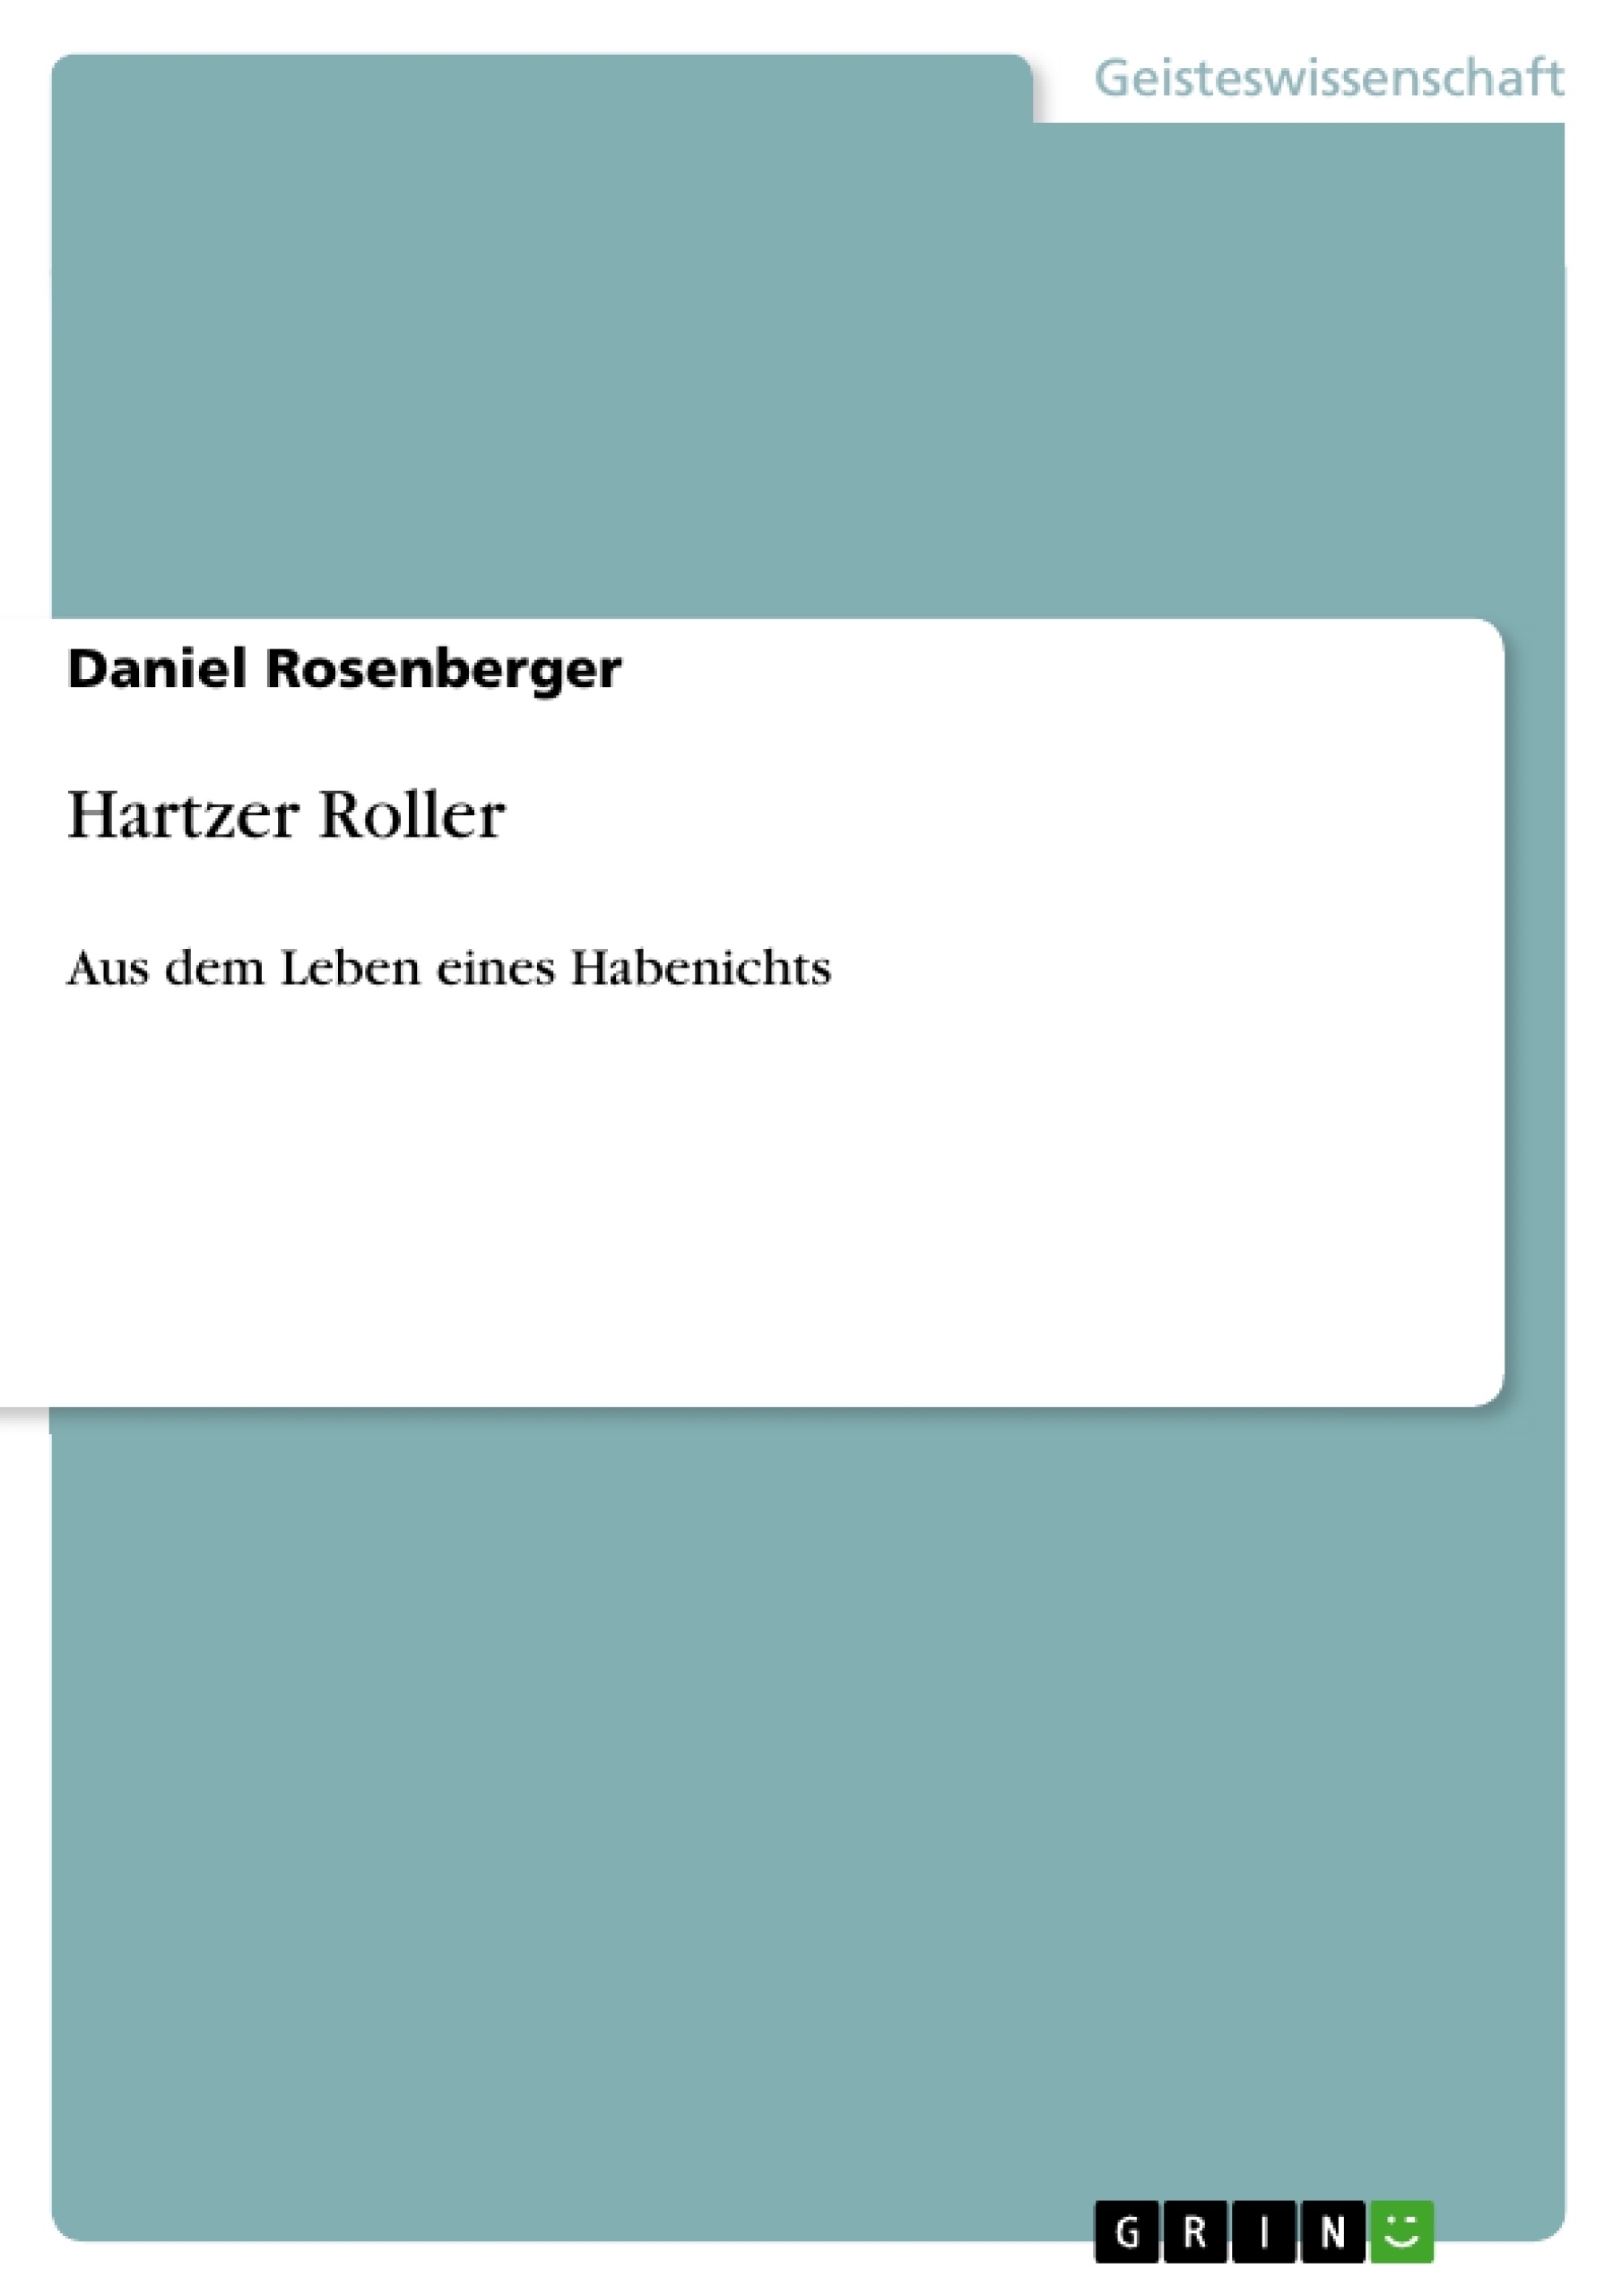 Título: Hartzer Roller